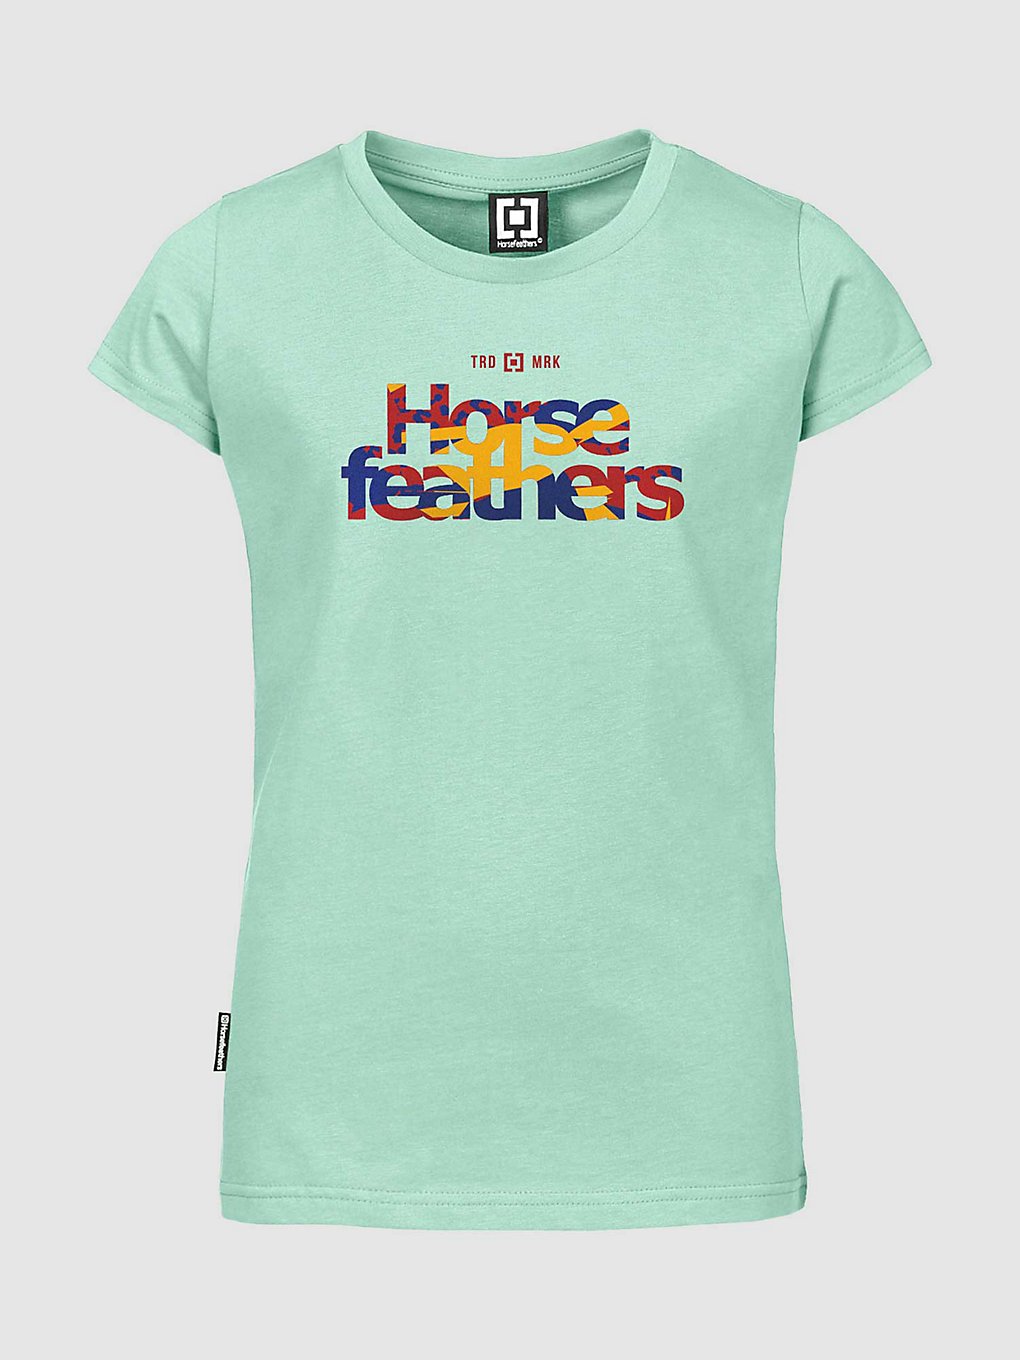 Horsefeathers Billie T-Shirt beach glass kaufen